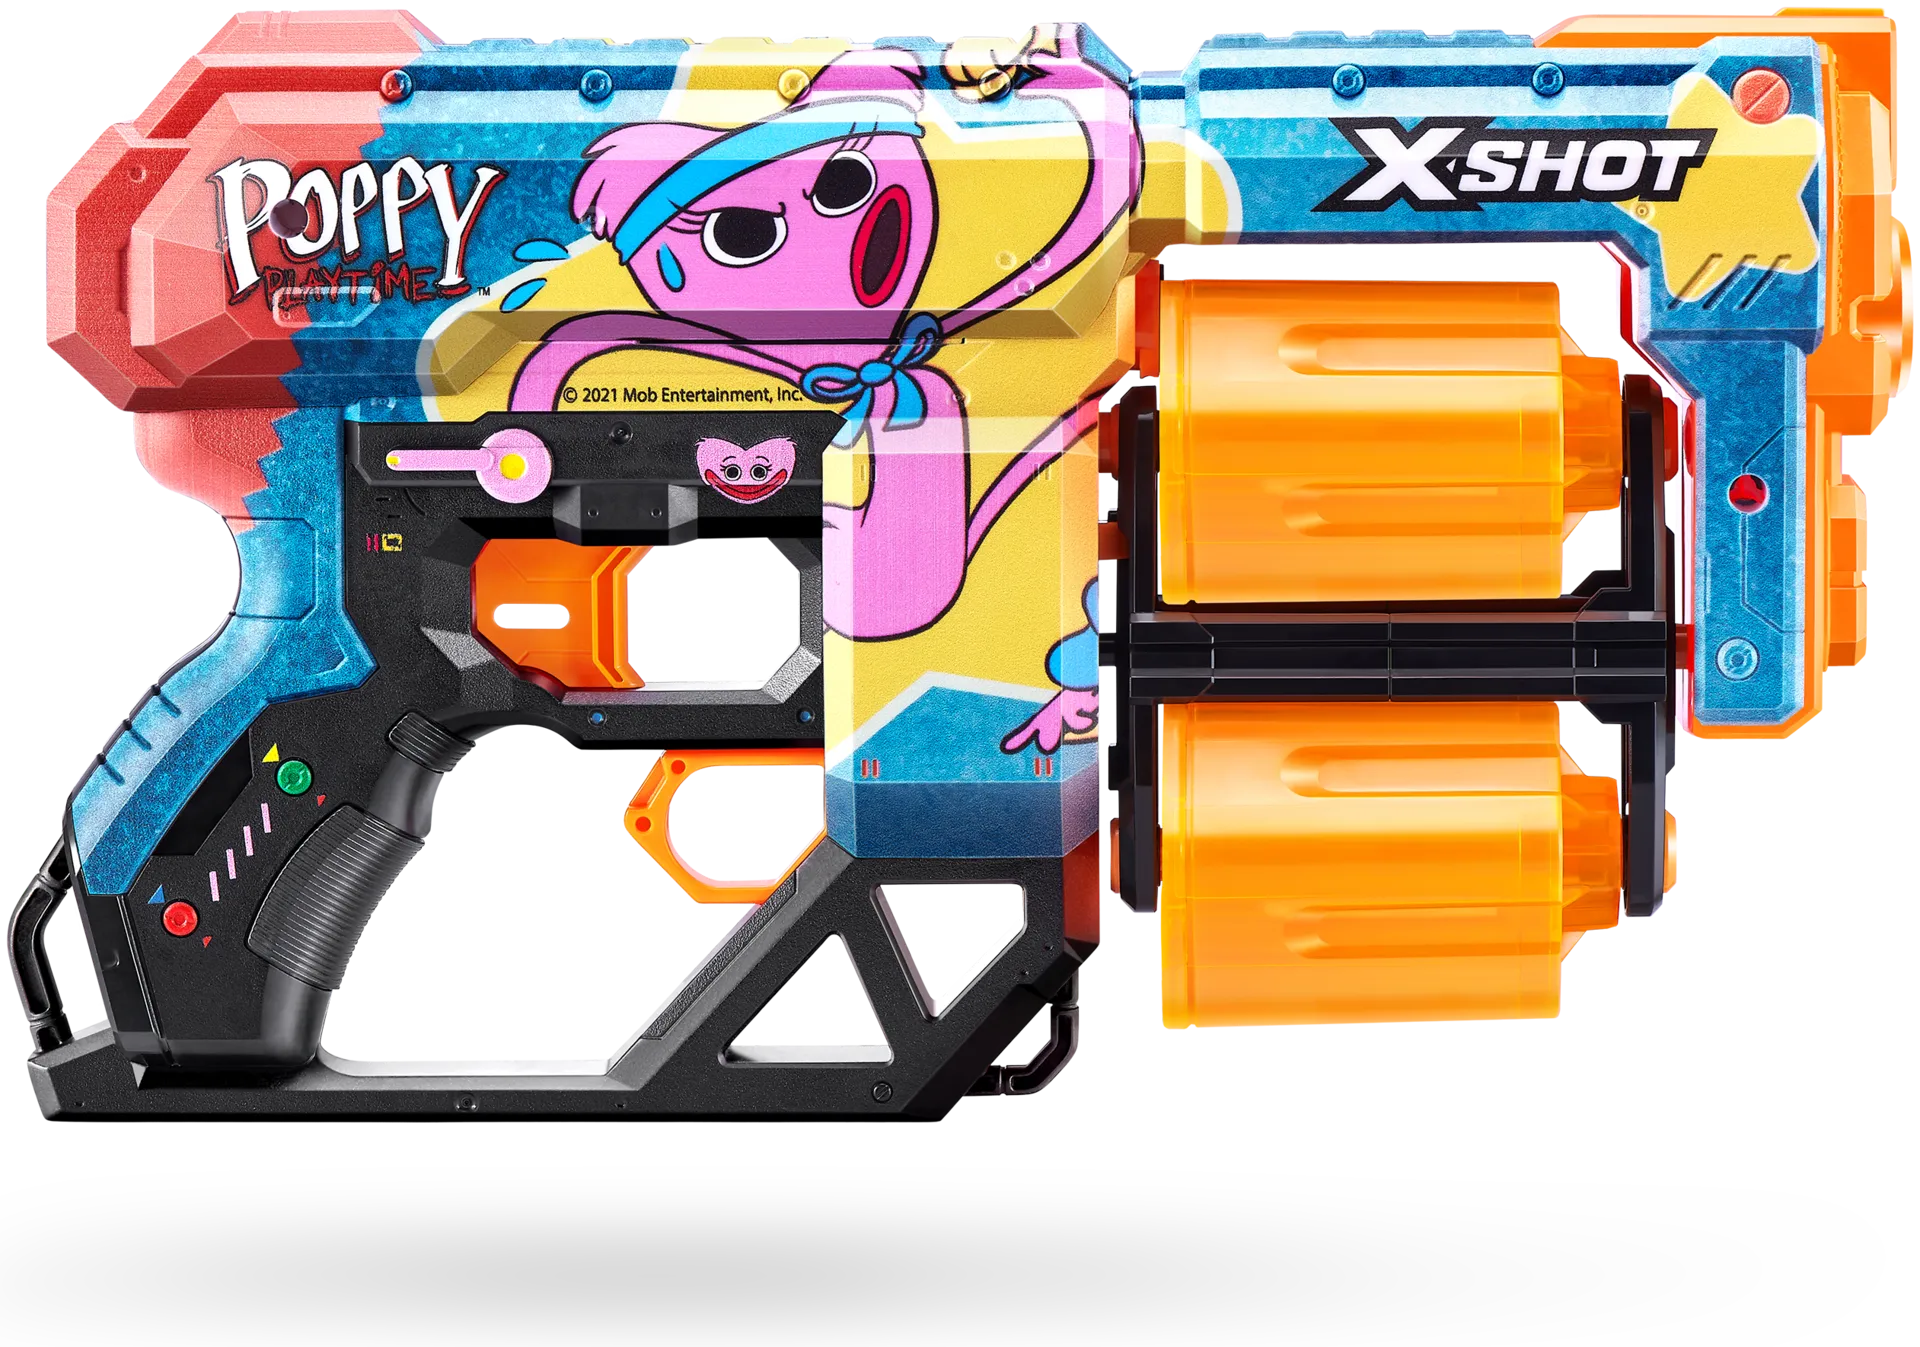 X-Shot Skins dread 12 ammusta Poppy Playtime - 2